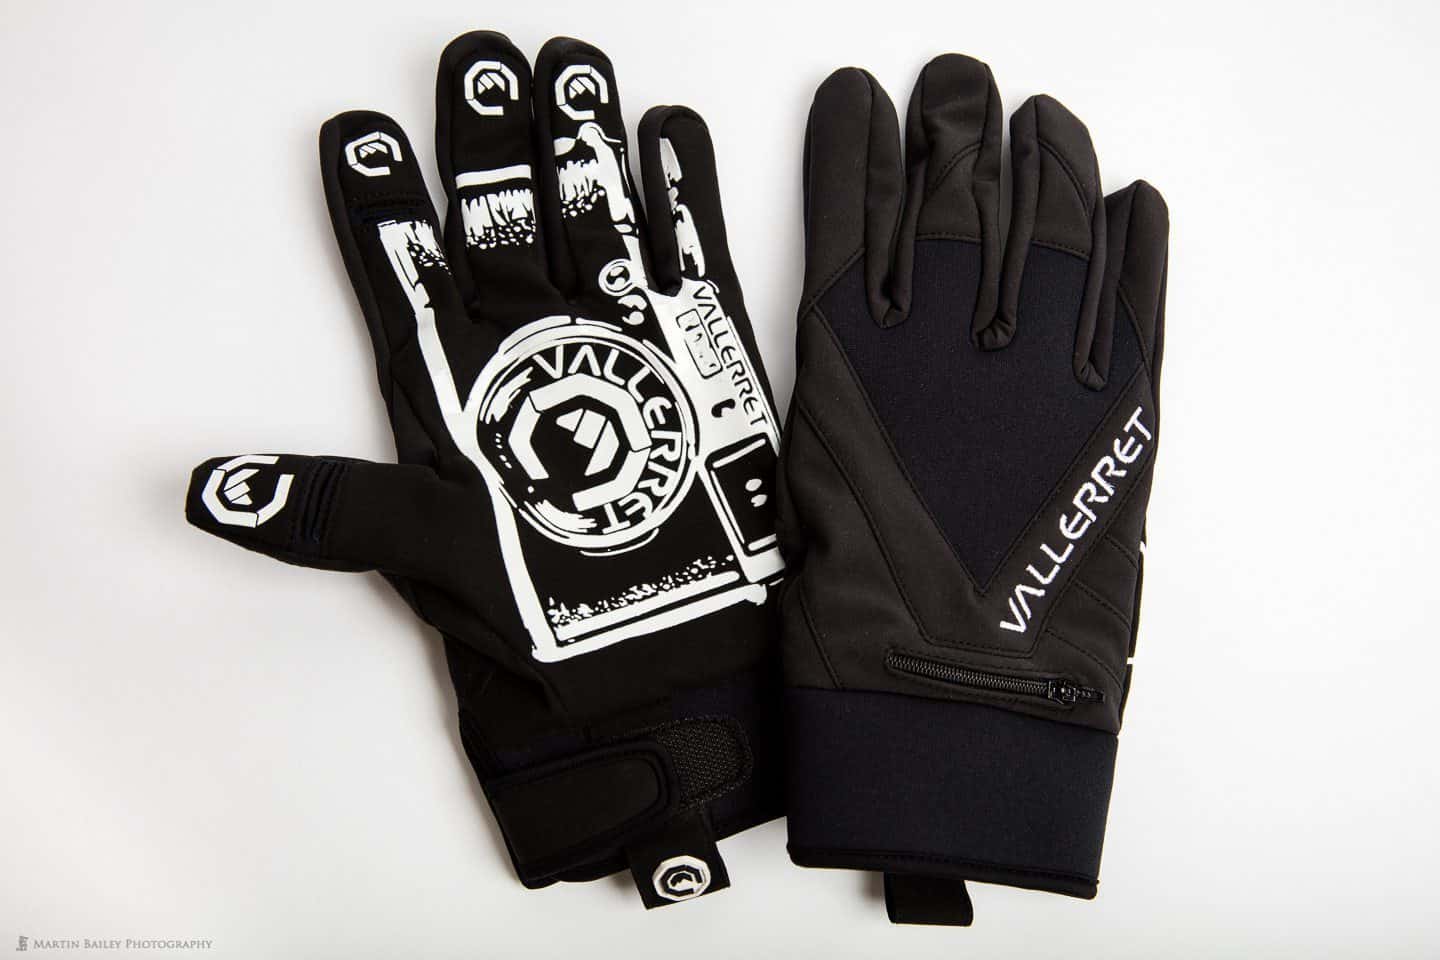 Vallerret Photography Gloves